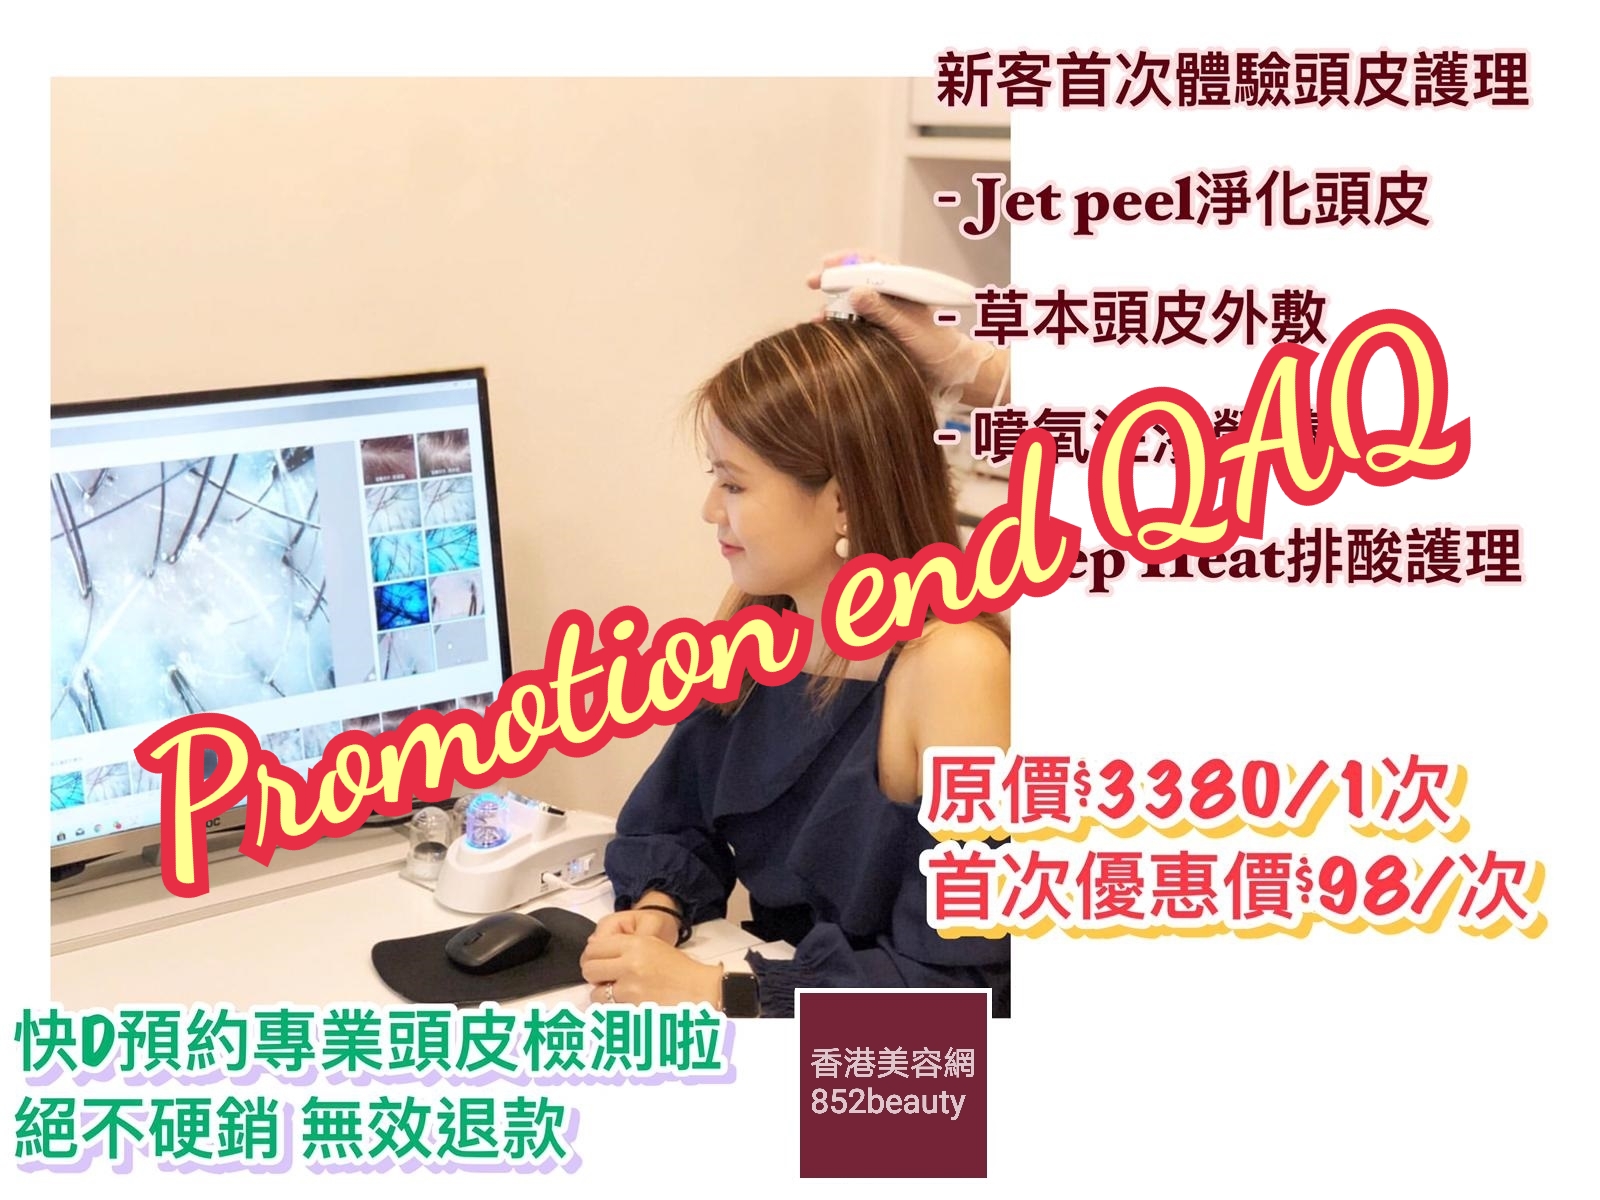 香港美容网 Hong Kong Beauty Salon 最新美容优惠: 美容優惠 - 尖沙咀區] 正視頭皮健康 $98大優惠套裝 (已結束)